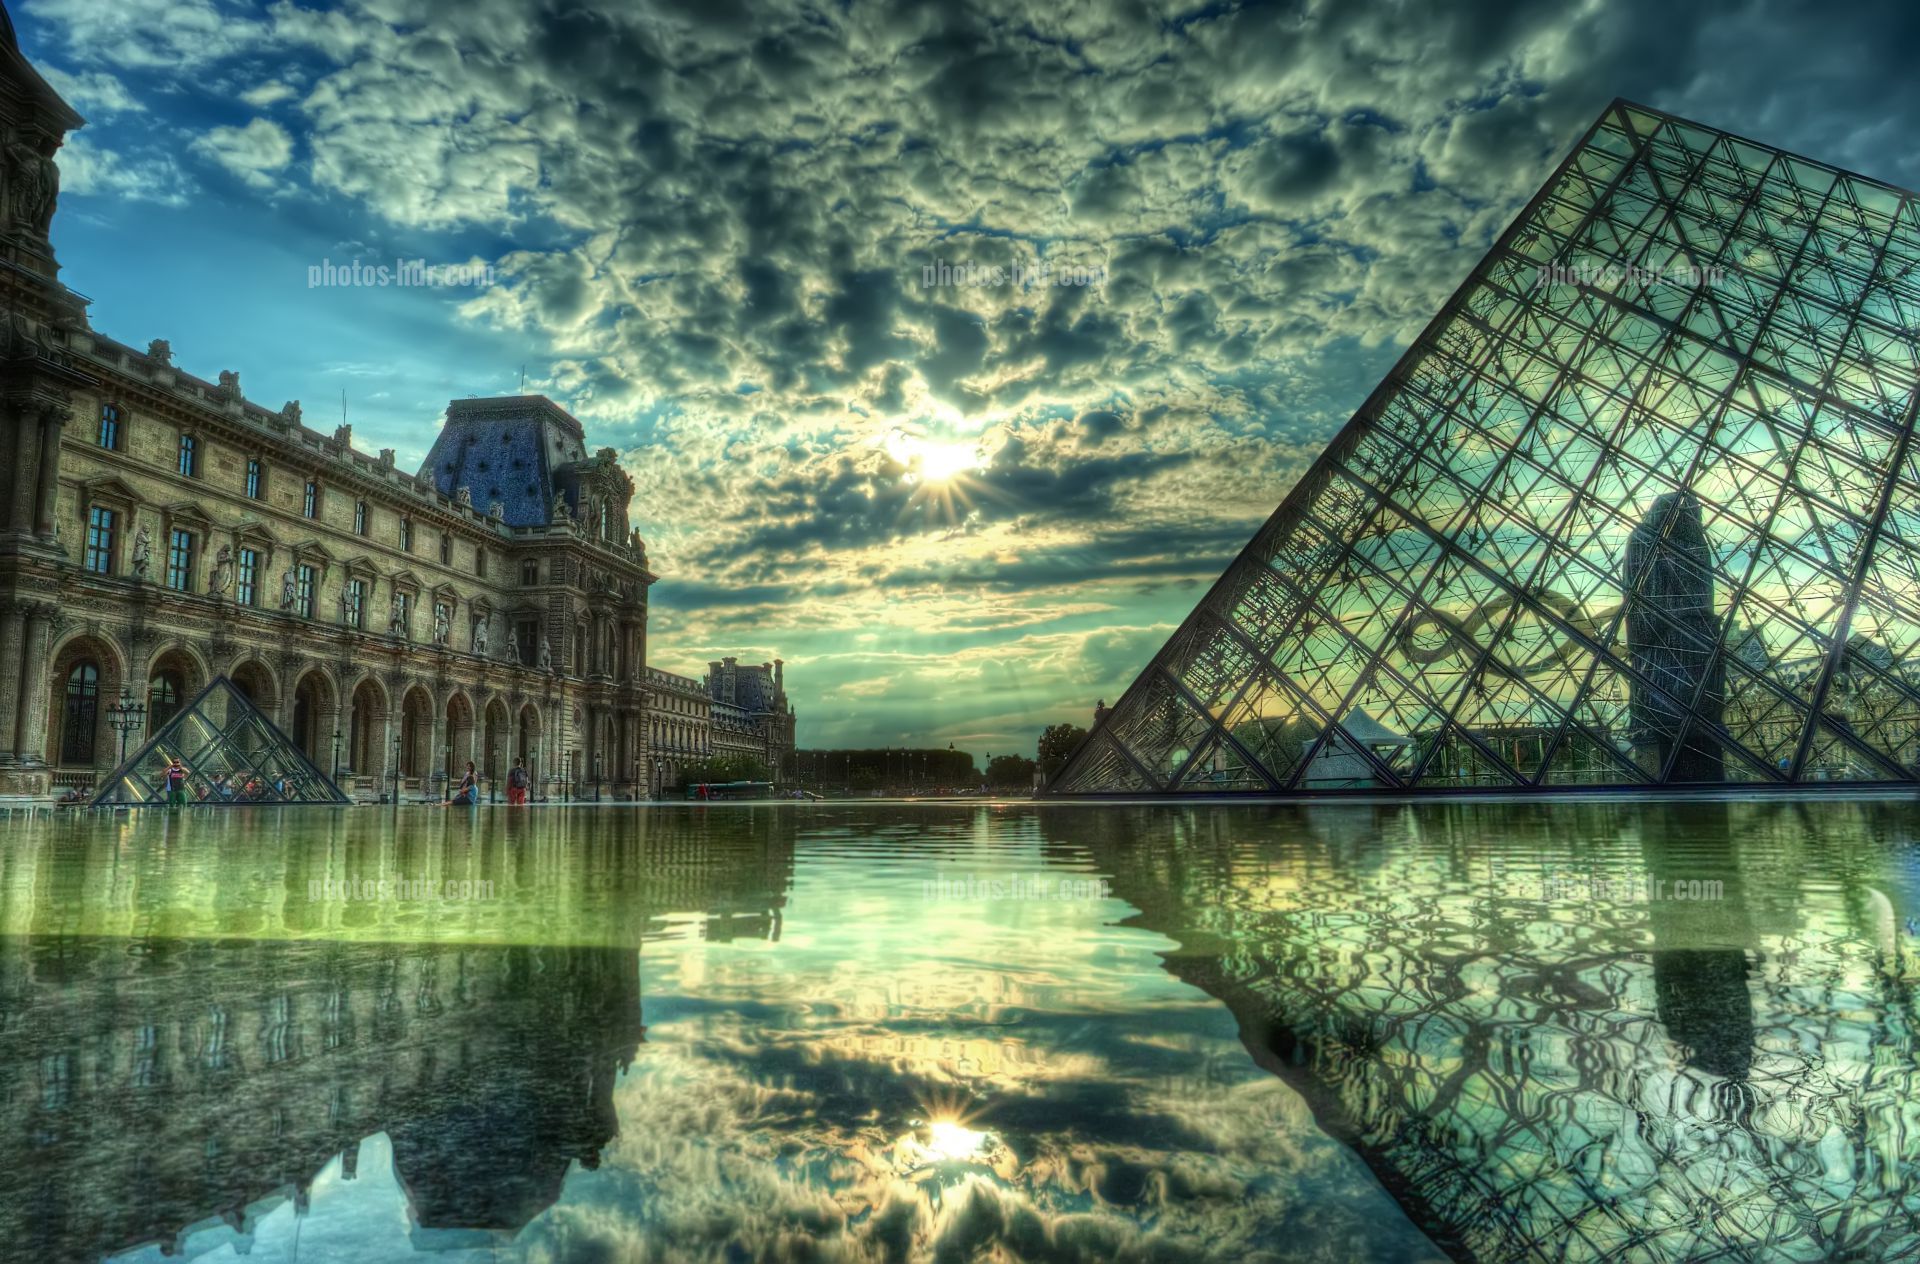 /Pyramide du Louvre